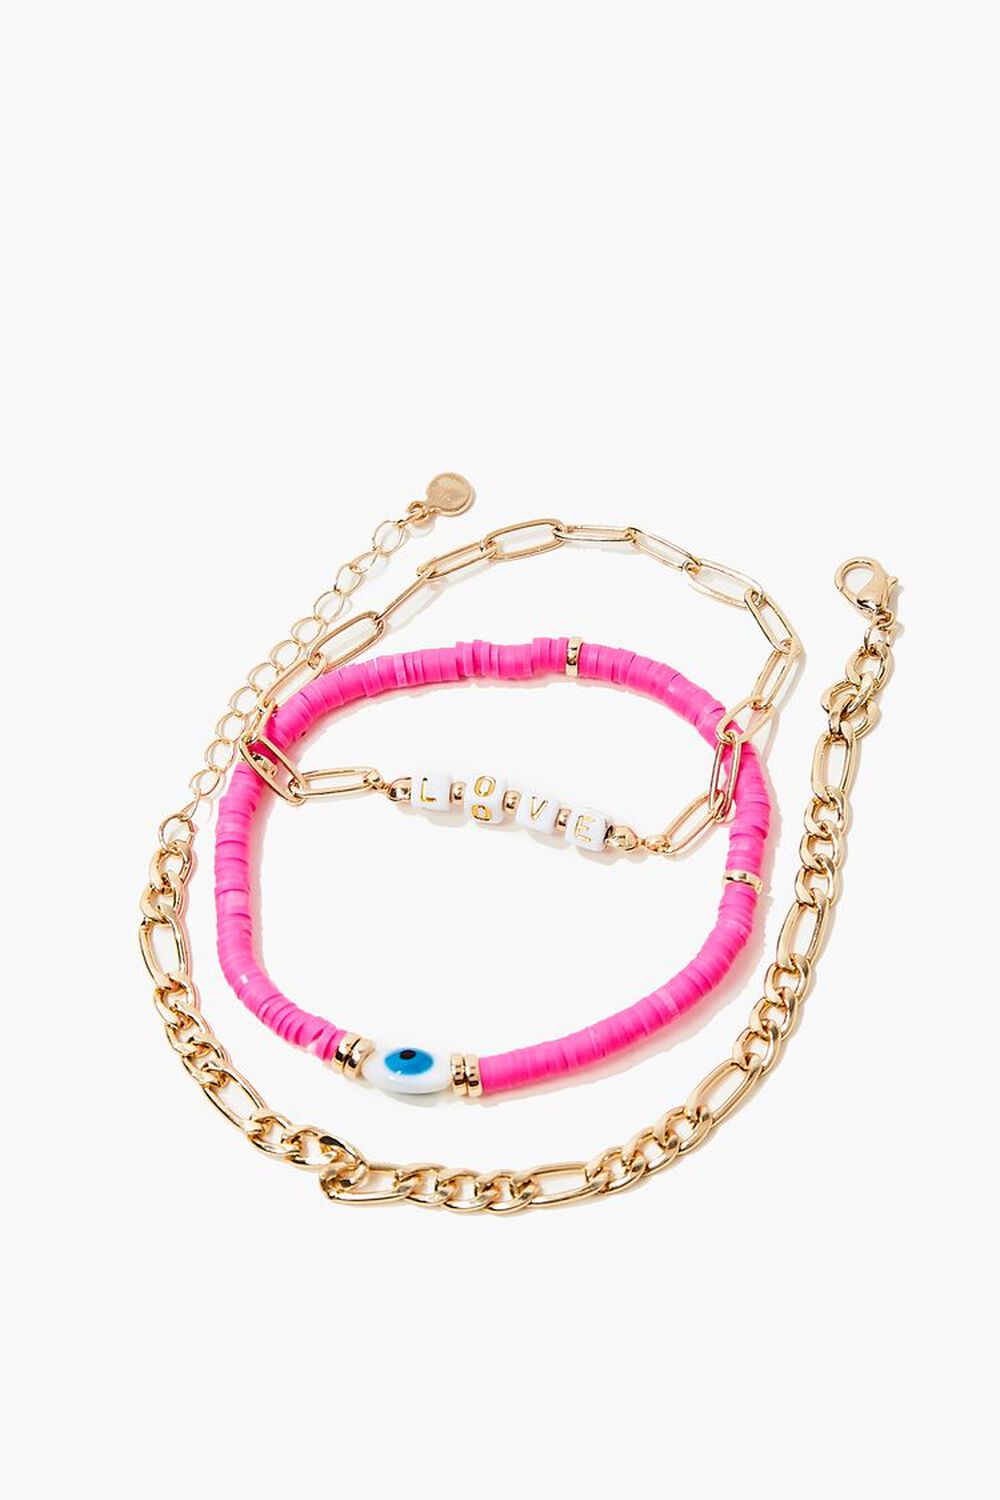 GOLD/PINK Love Chain Bracelet Set, image 2